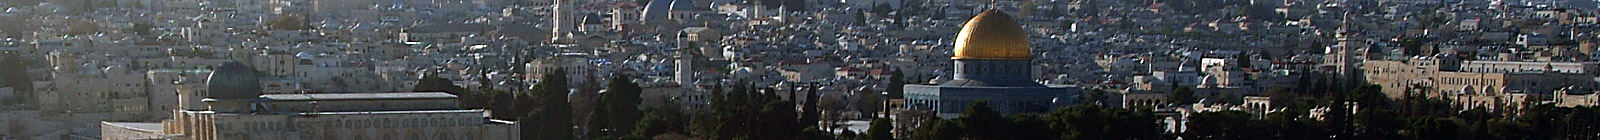 Rock of the Dome, al-Aqsa mosque, Jerusalem banner.